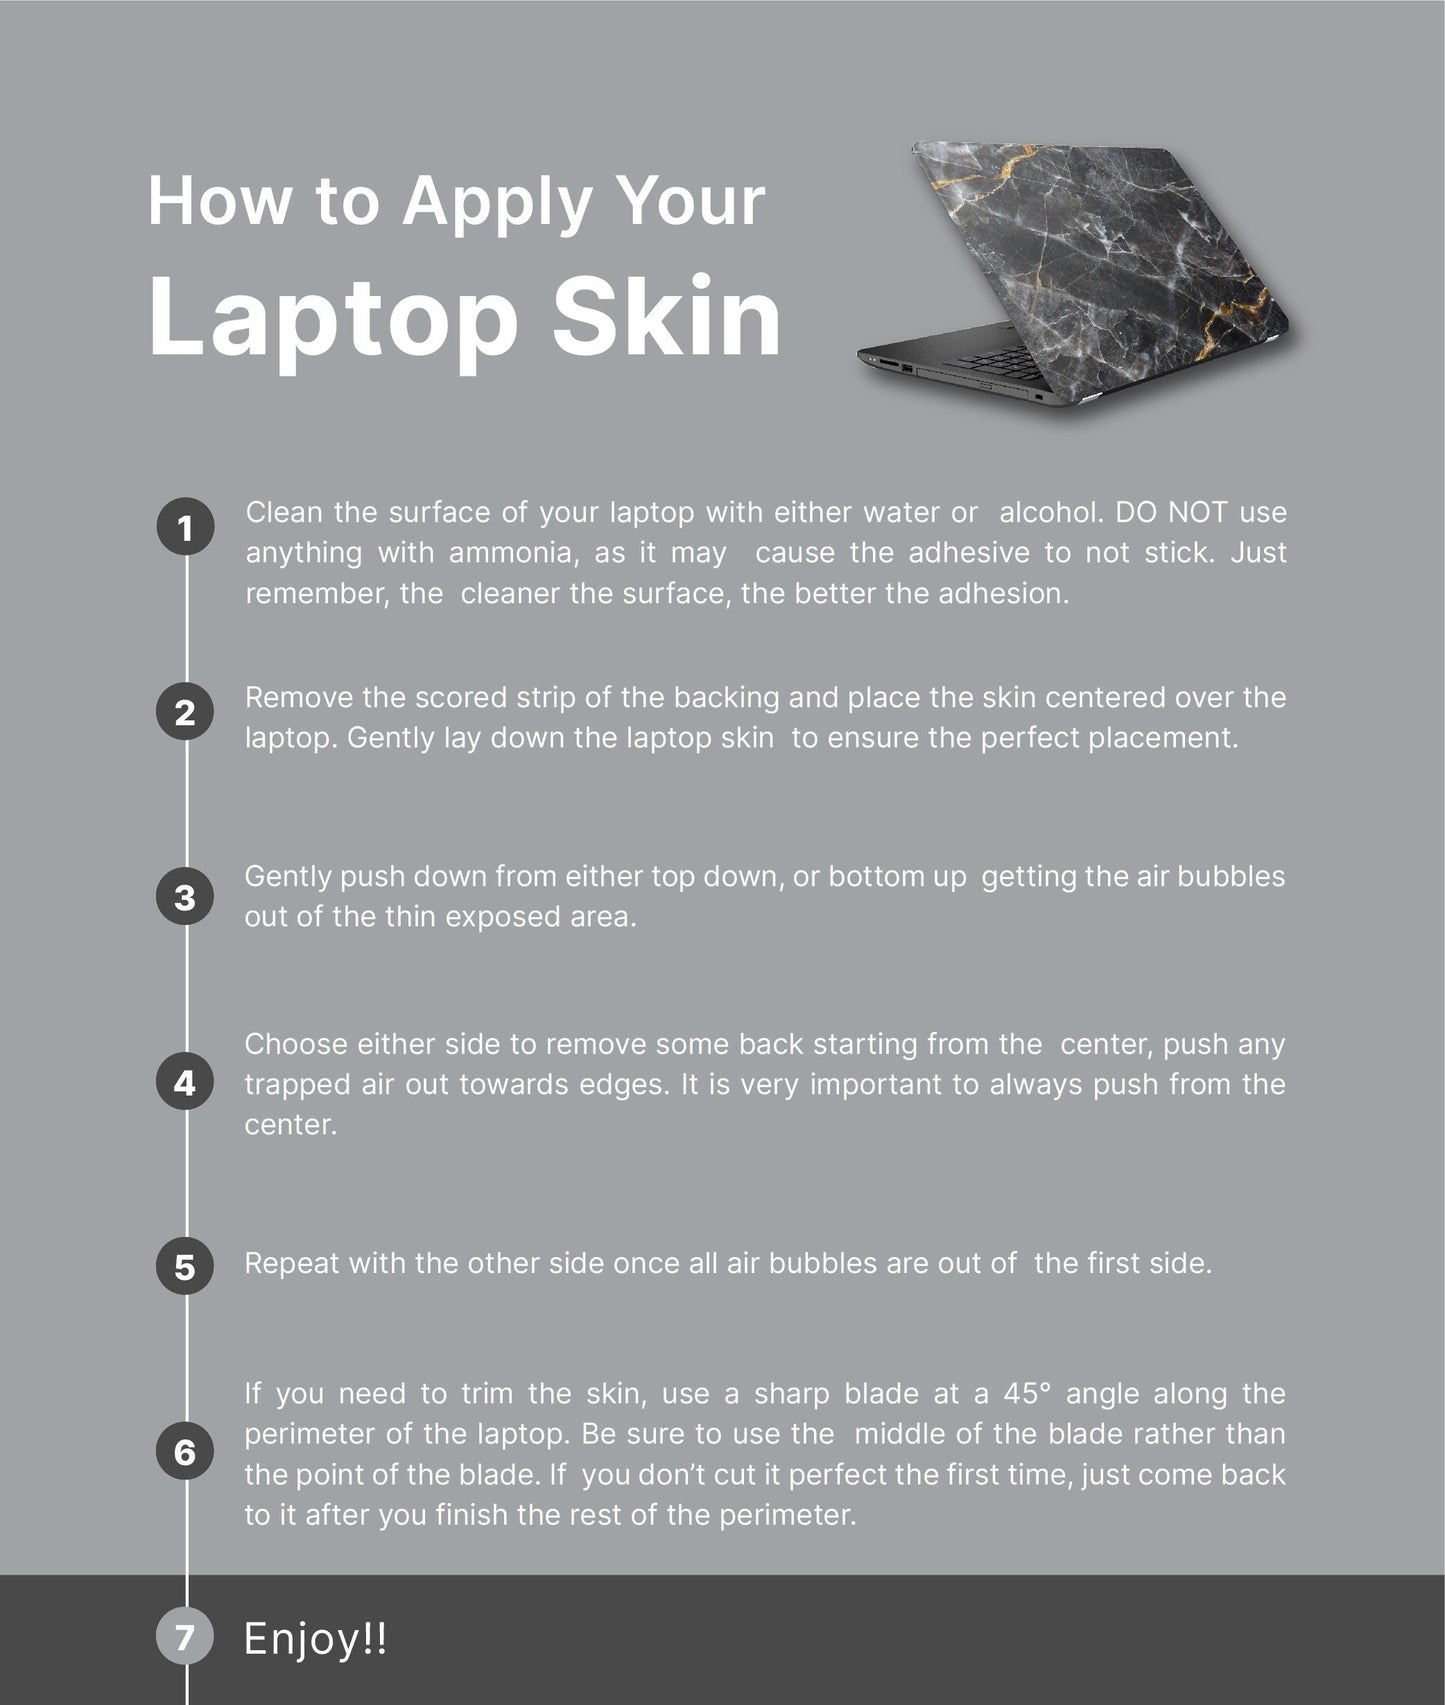 Boho Mountain Top Laptop Skin, Laptop Cover, Laptop Skins, Removable Laptop Skins, Laptop Decal, Customized Laptop Skin, Laptop Stickers 225